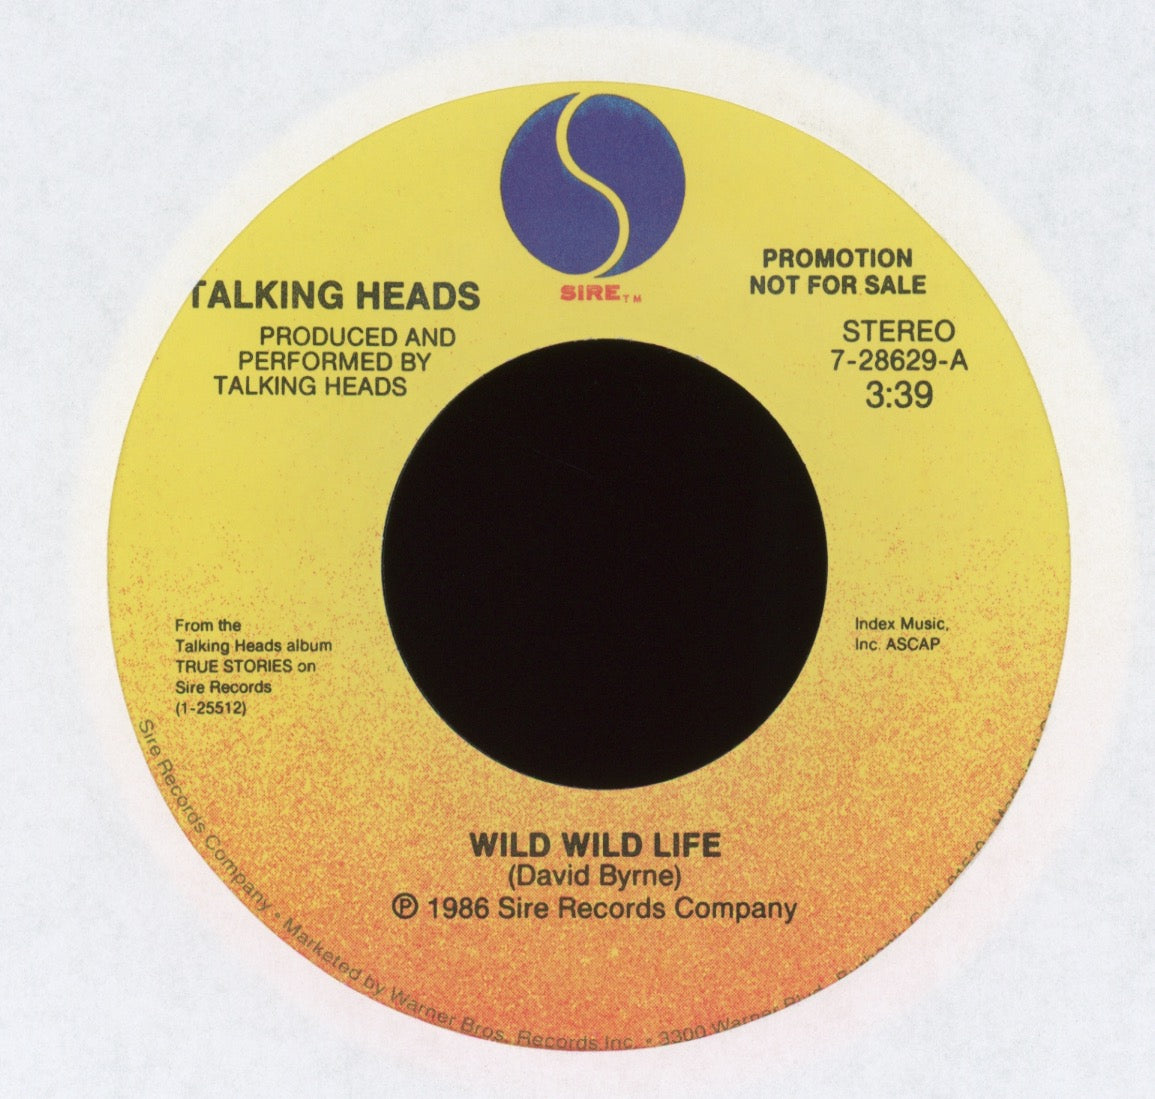 Talking Heads - Wild Wild Life on Sire Promo